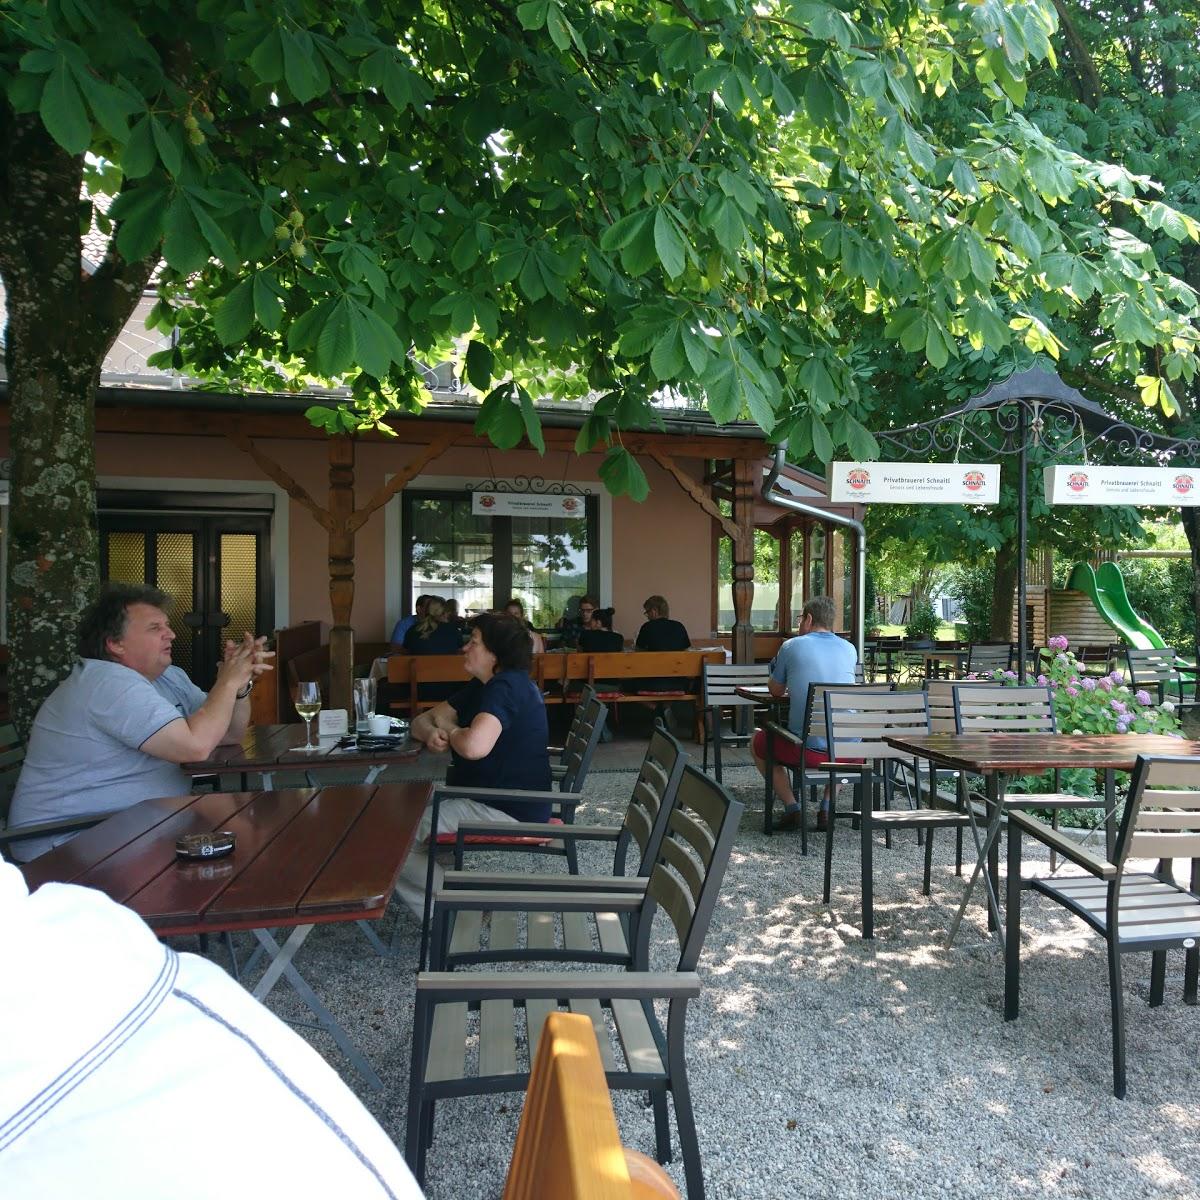 Restaurant "Gasthaus Scharinger" in Handenberg